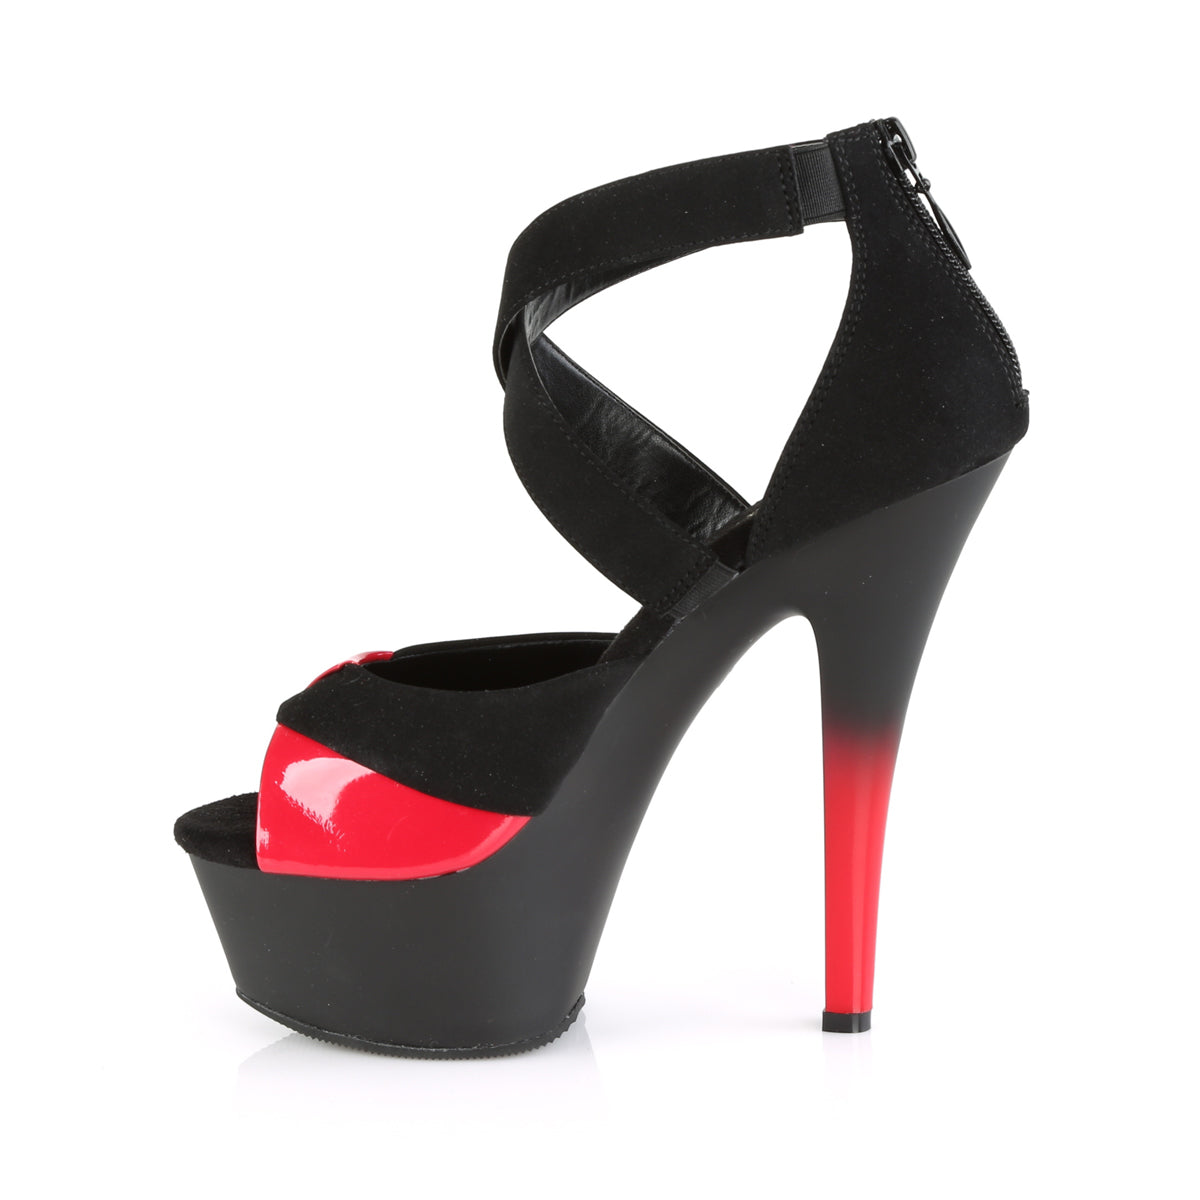 Pleaser Womens Sandals KISS-221 Blk Nubuck-Red Pat/Blk Matte-Red